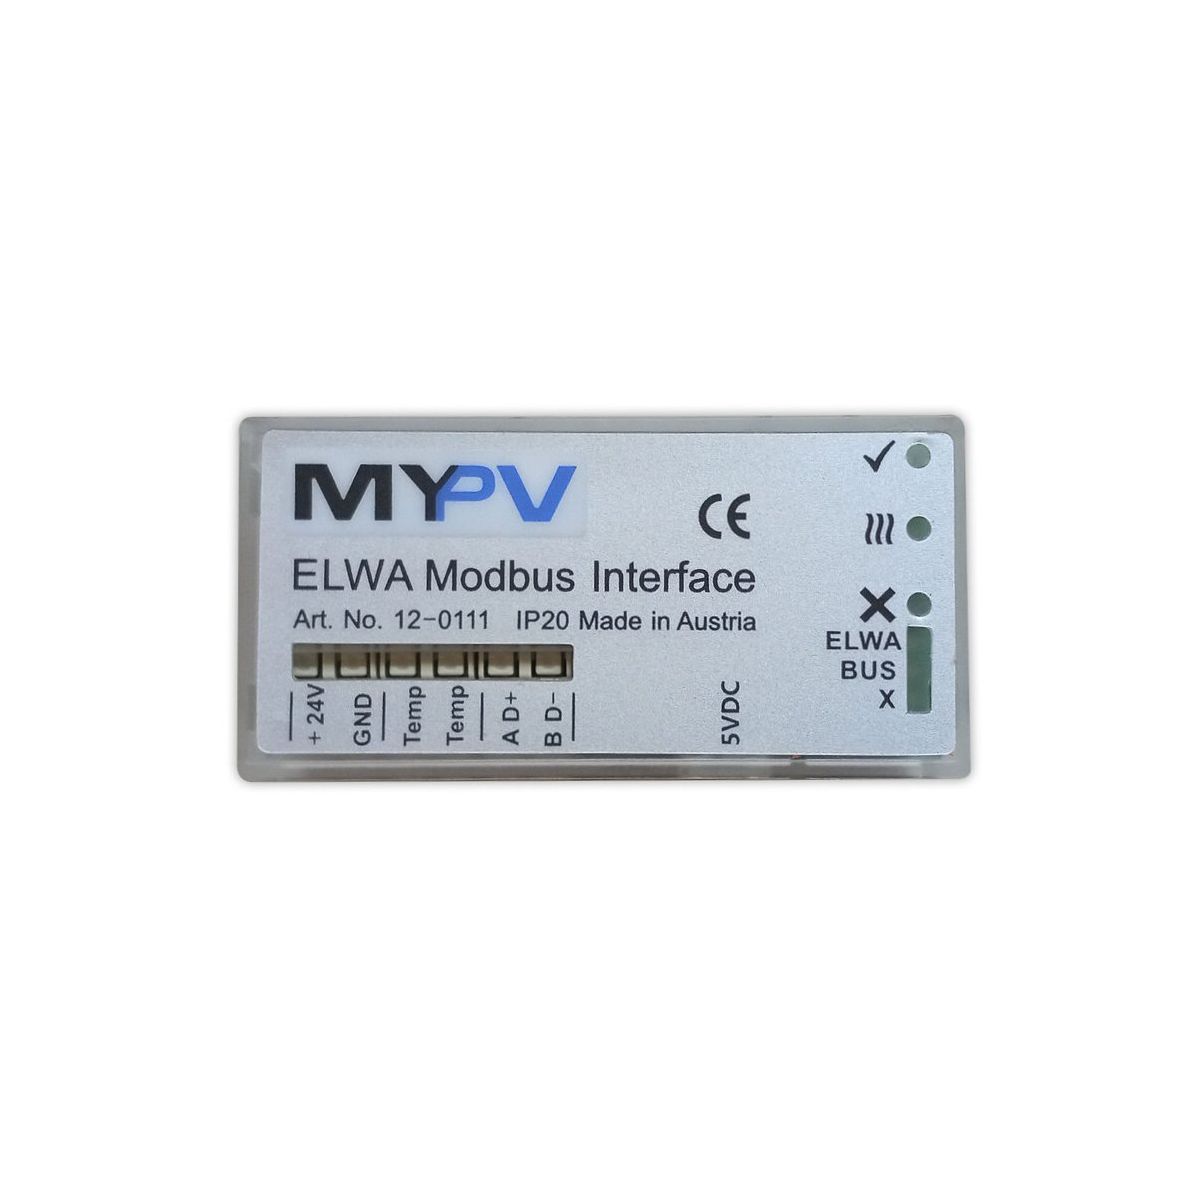 Produktbild My-PV ELWA Modbus-Schnittstelle für ELWA